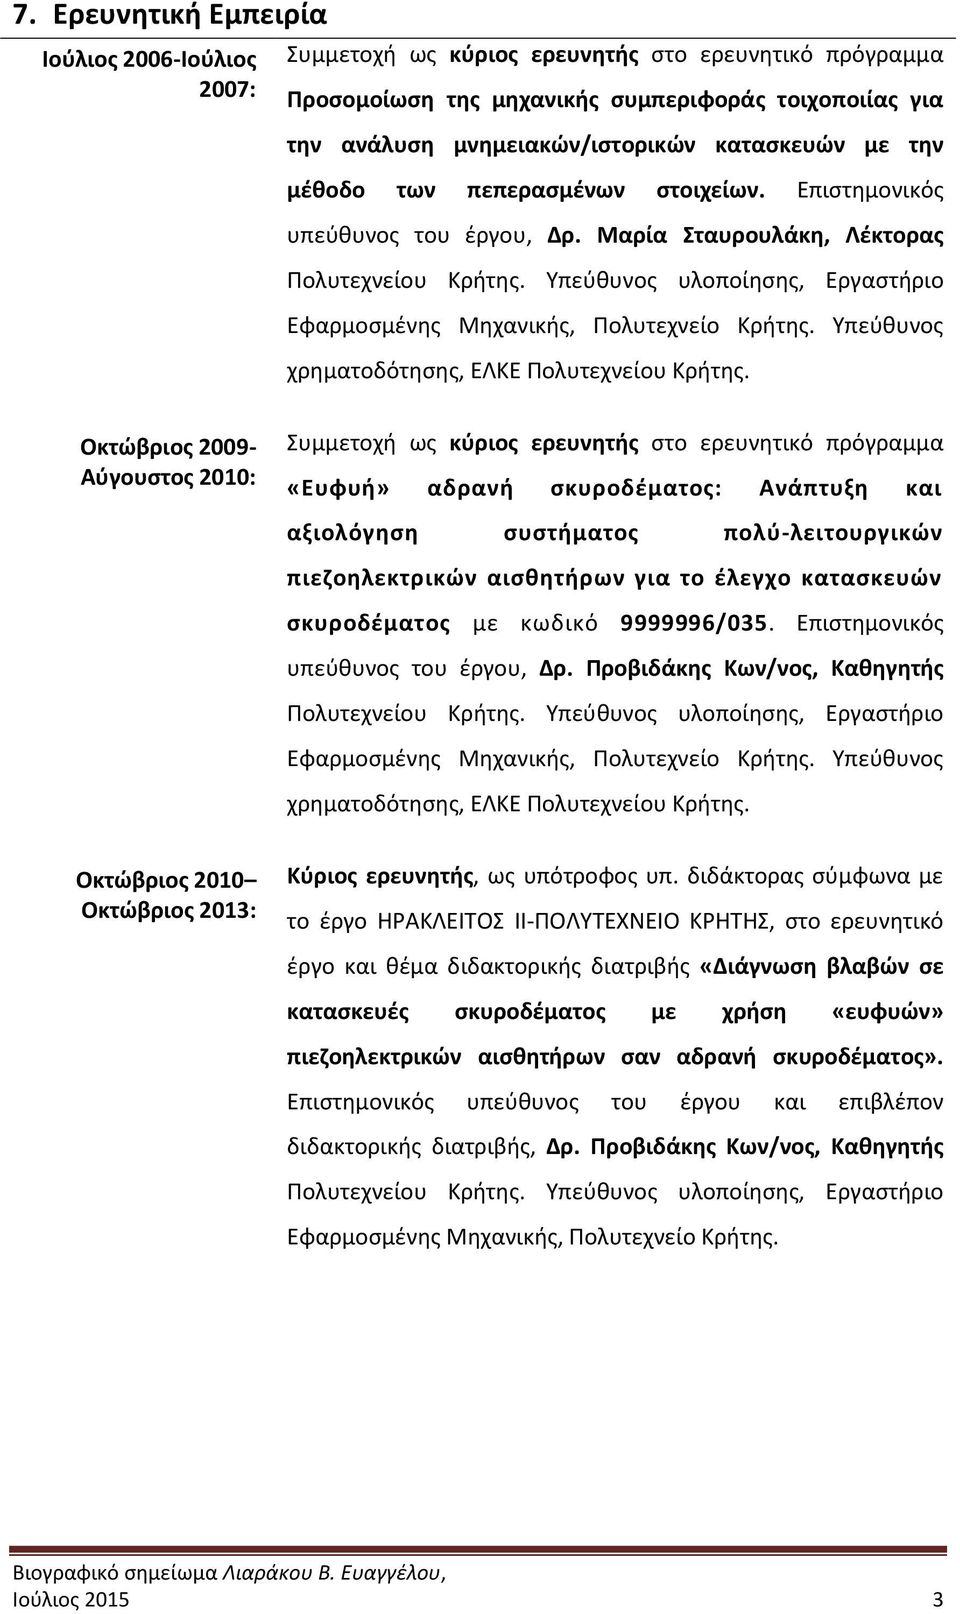 Υπεύθυνος χρηματοδότησης, ΕΛΚΕ Πολυτεχνείου Κρήτης.